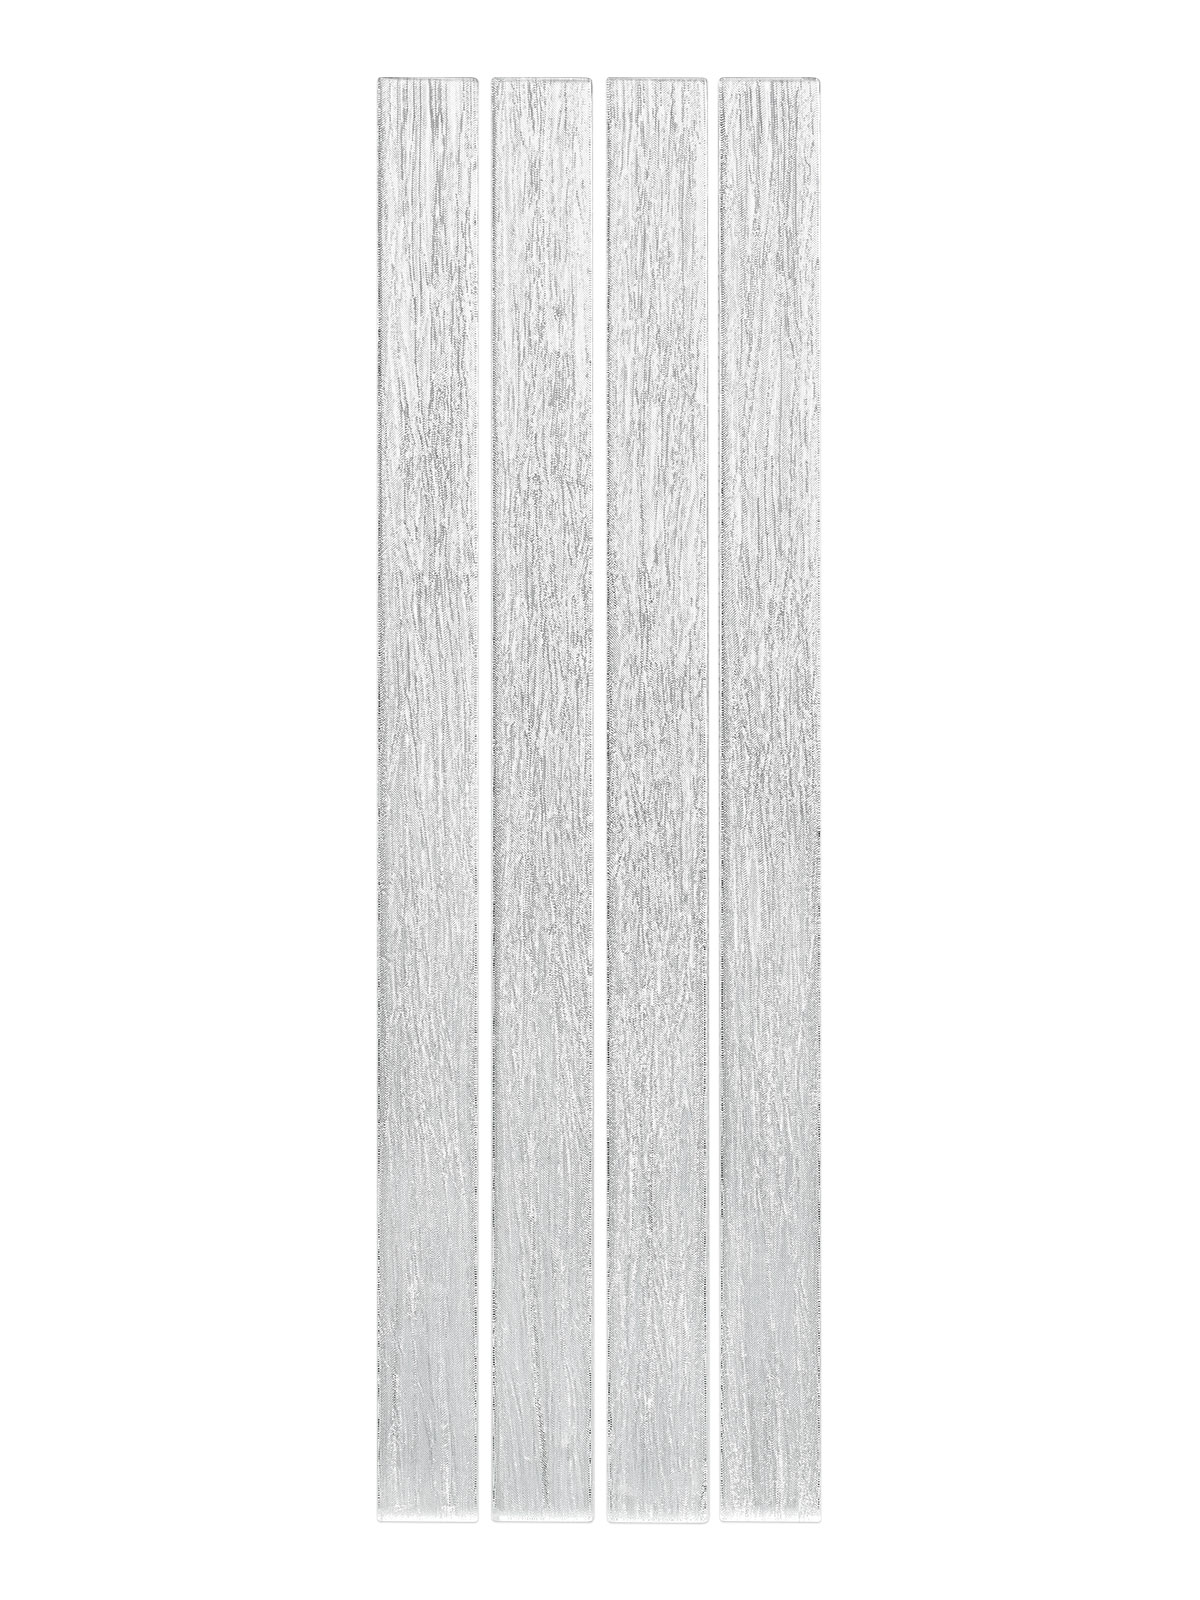 Shimmery White Glass Modern Backsplash Tile BA8022 2